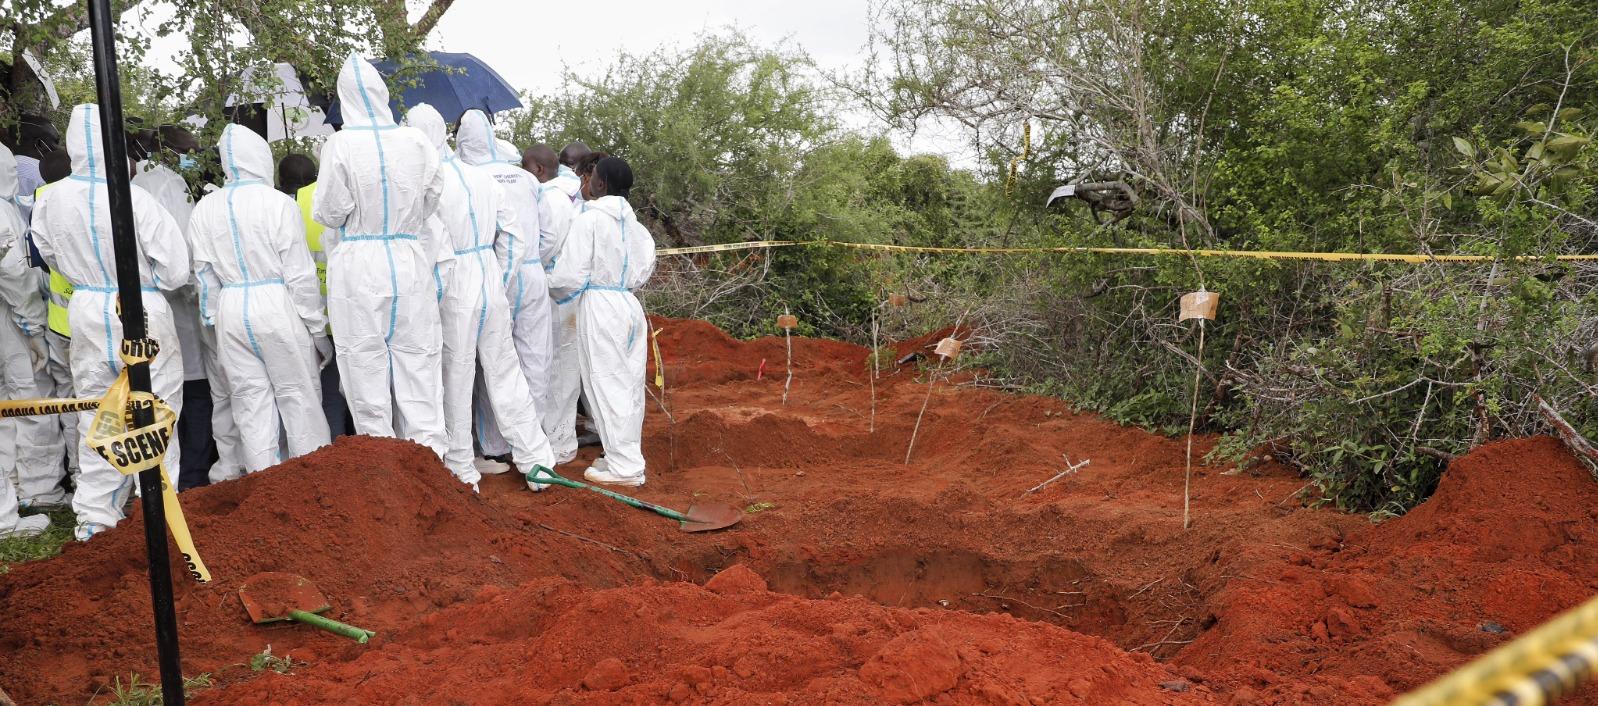 Se han identificado más tumbas, pero se cavarán después de que se complete la autopsia de 129 cuerpos.